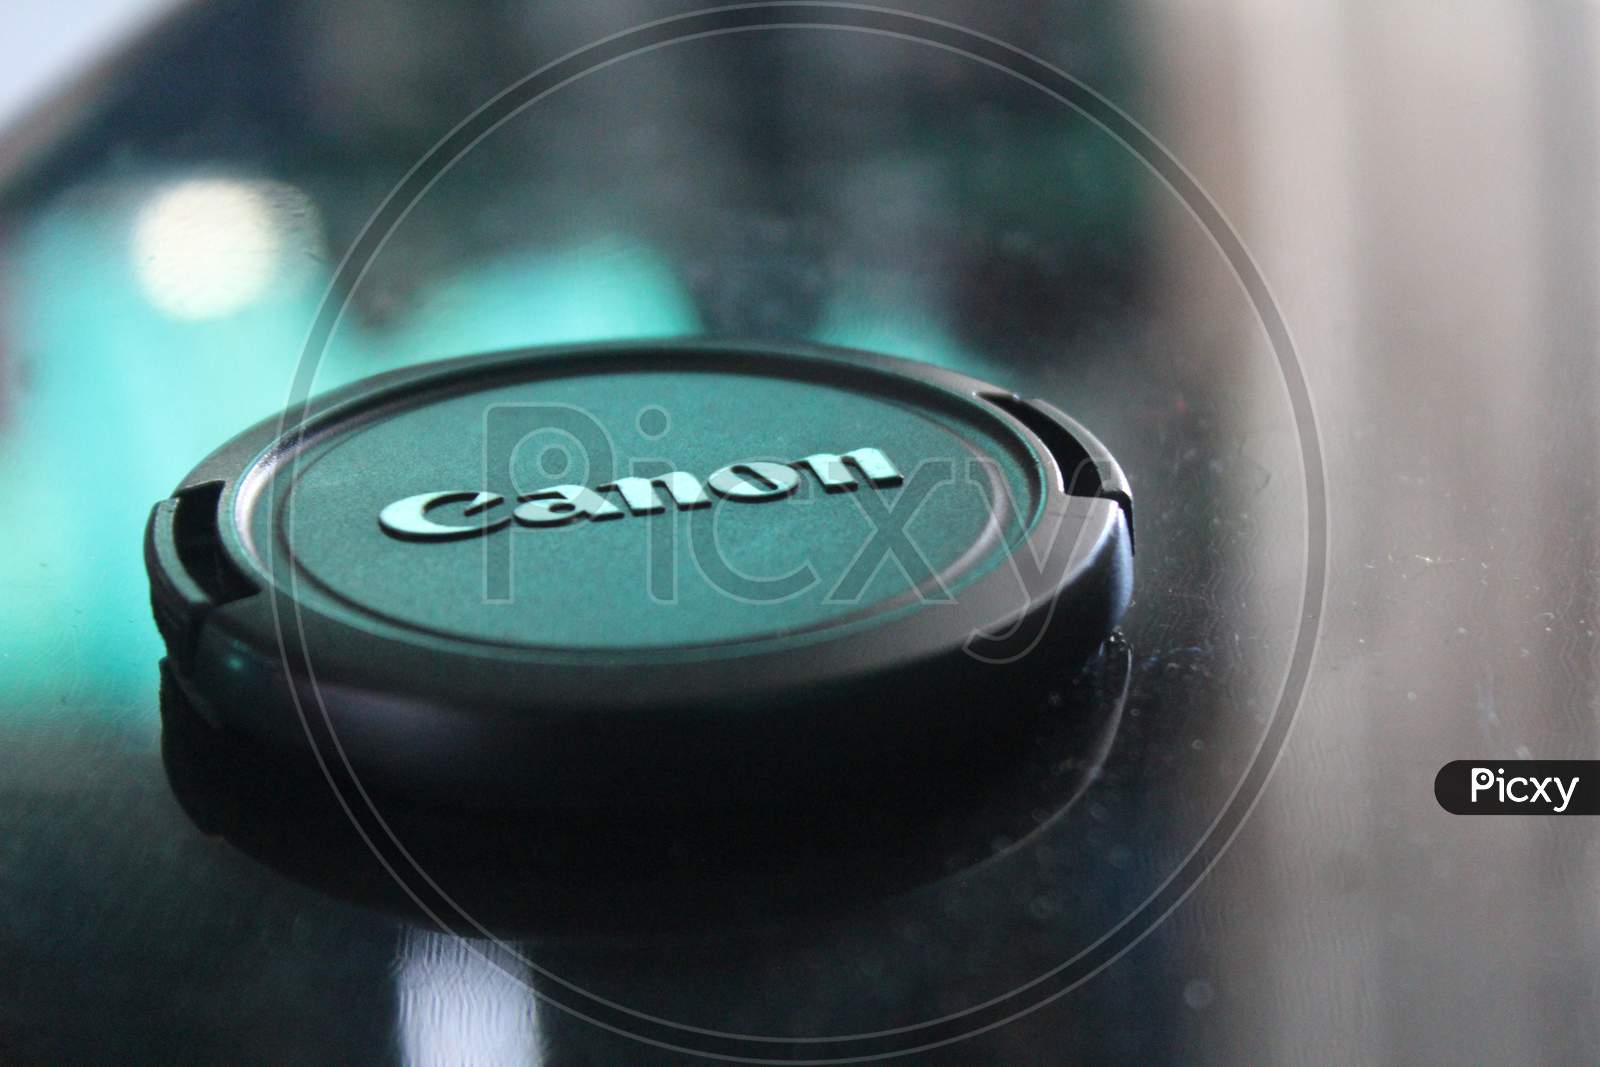 Canon camera lens cap close up view. Canon